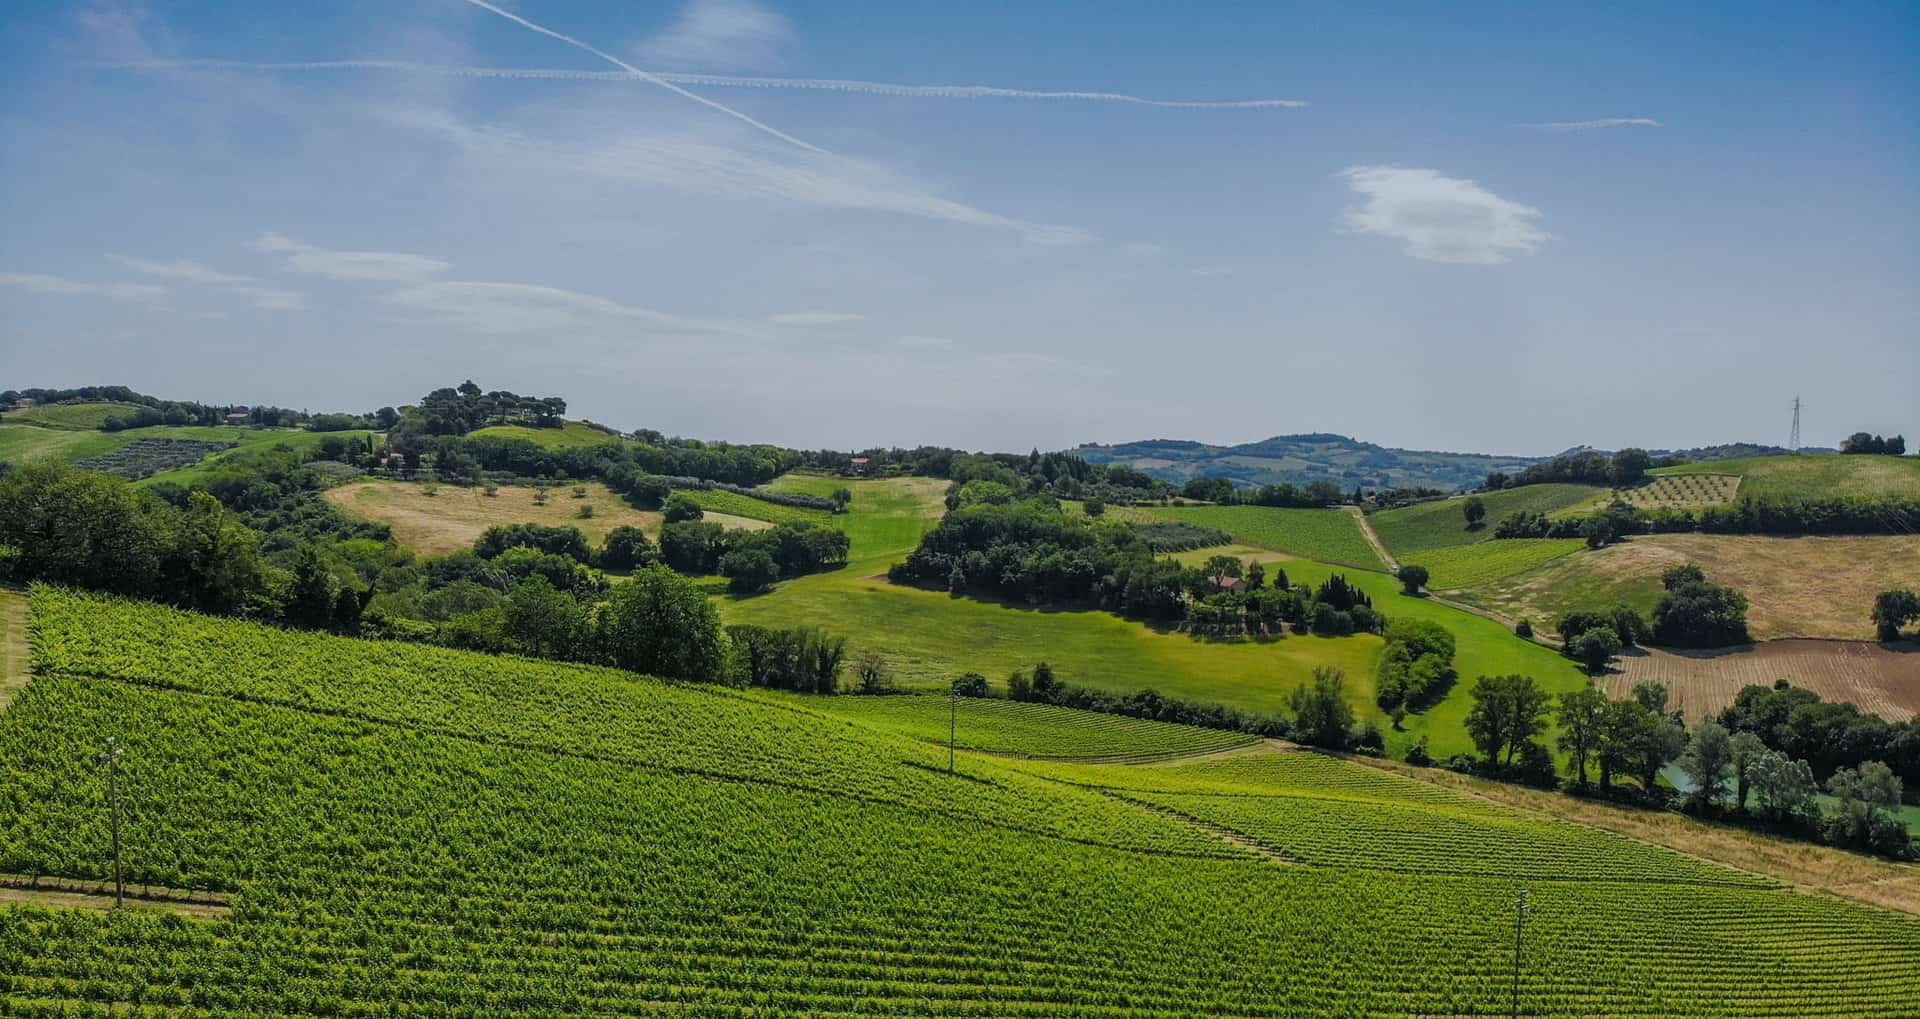 Weinberge in den Hügeln der Region Marken, Italien.